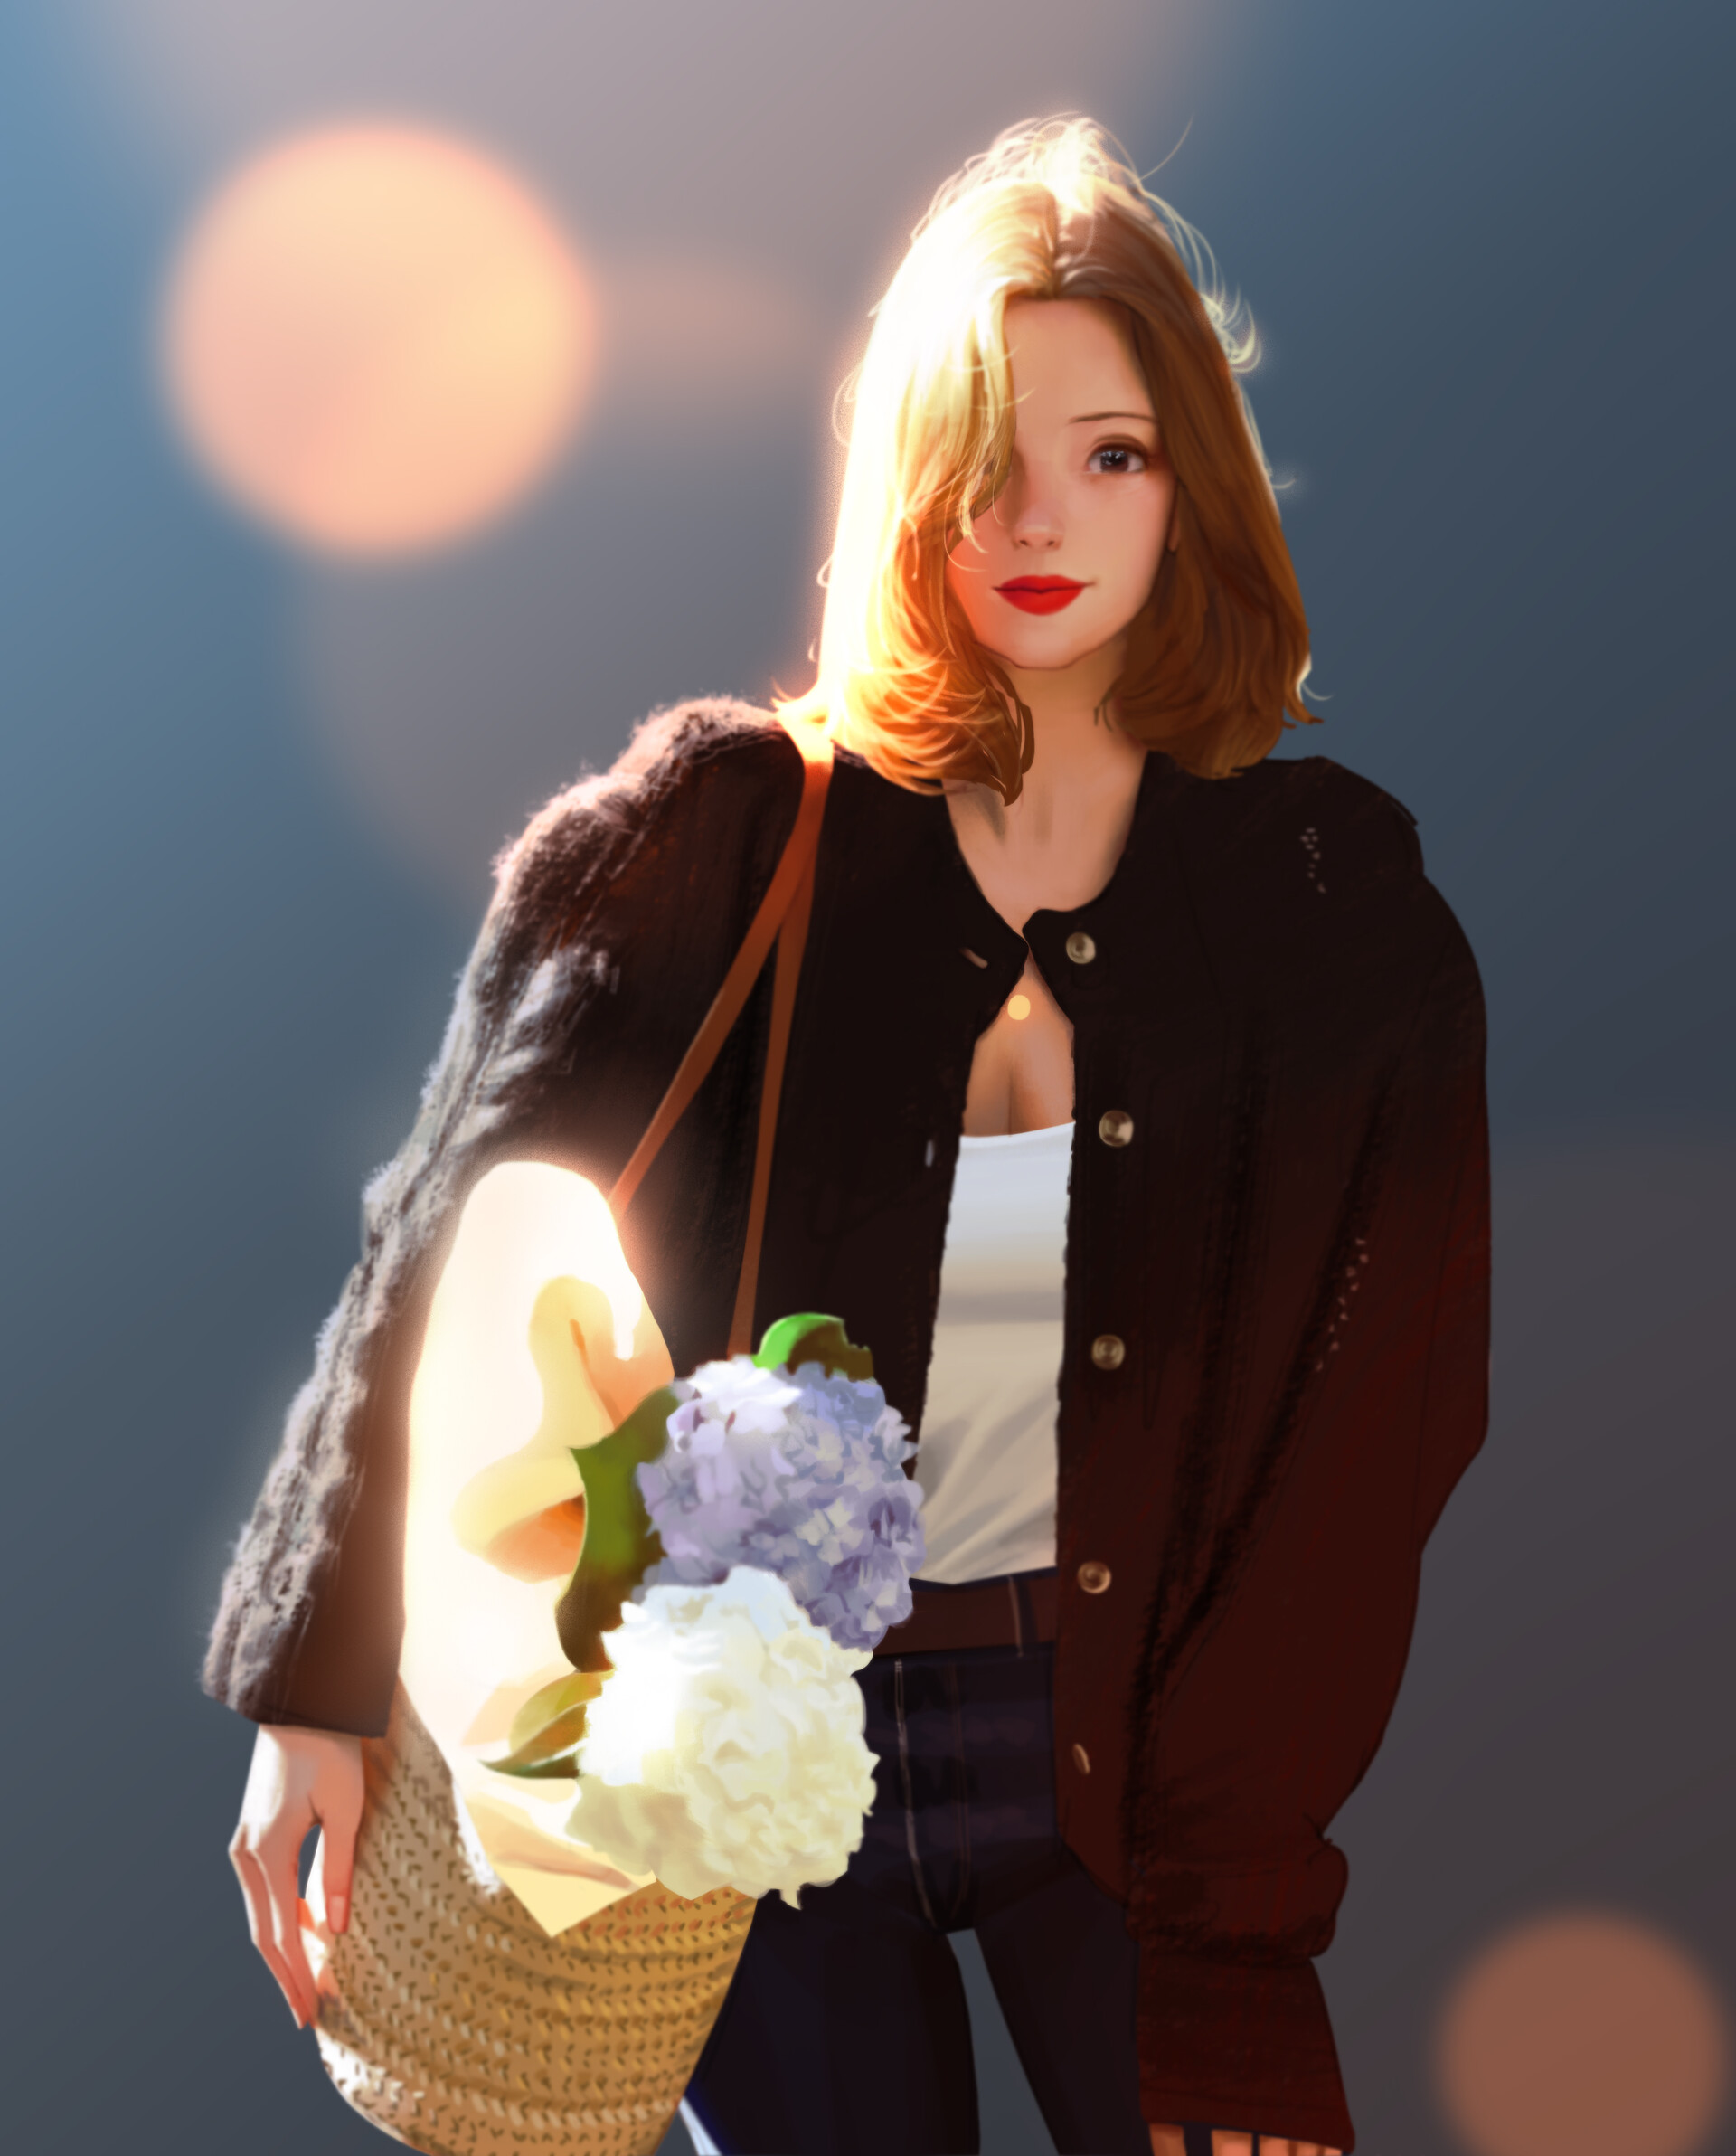 WB Lee Women Redhead Brown Eyes Sweater Black Sweater Flowers Baskets Jeans Artwork Fan Art Digital  1920x2384